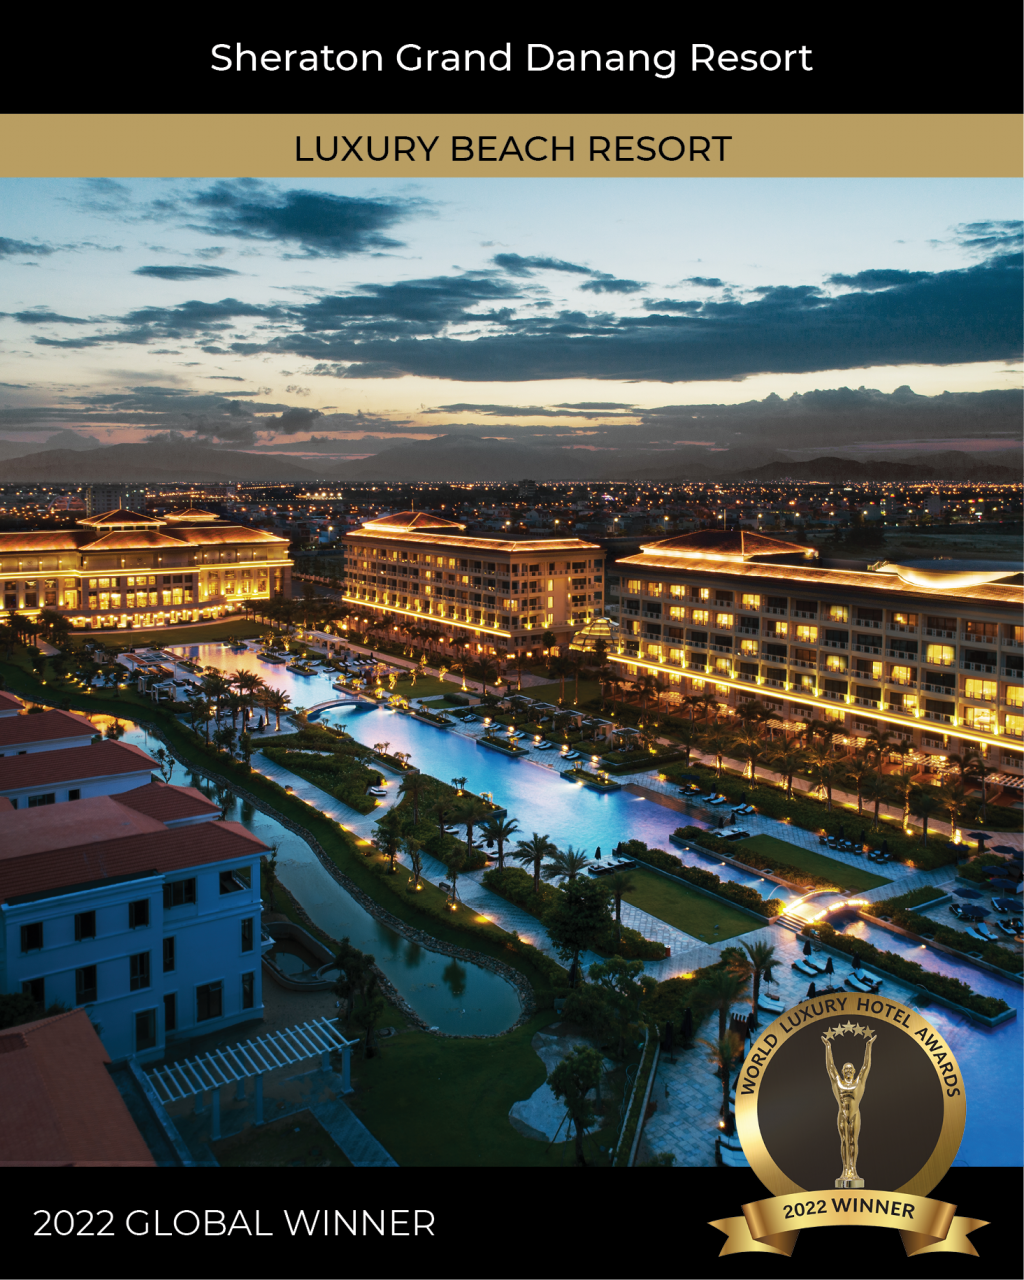 Khu nghỉ dưỡng Sheraton Grand Đà Nẵng của Tập đoàn BRG vinh dự nhận hai giải thưởng từ 2022 World Luxury Awards